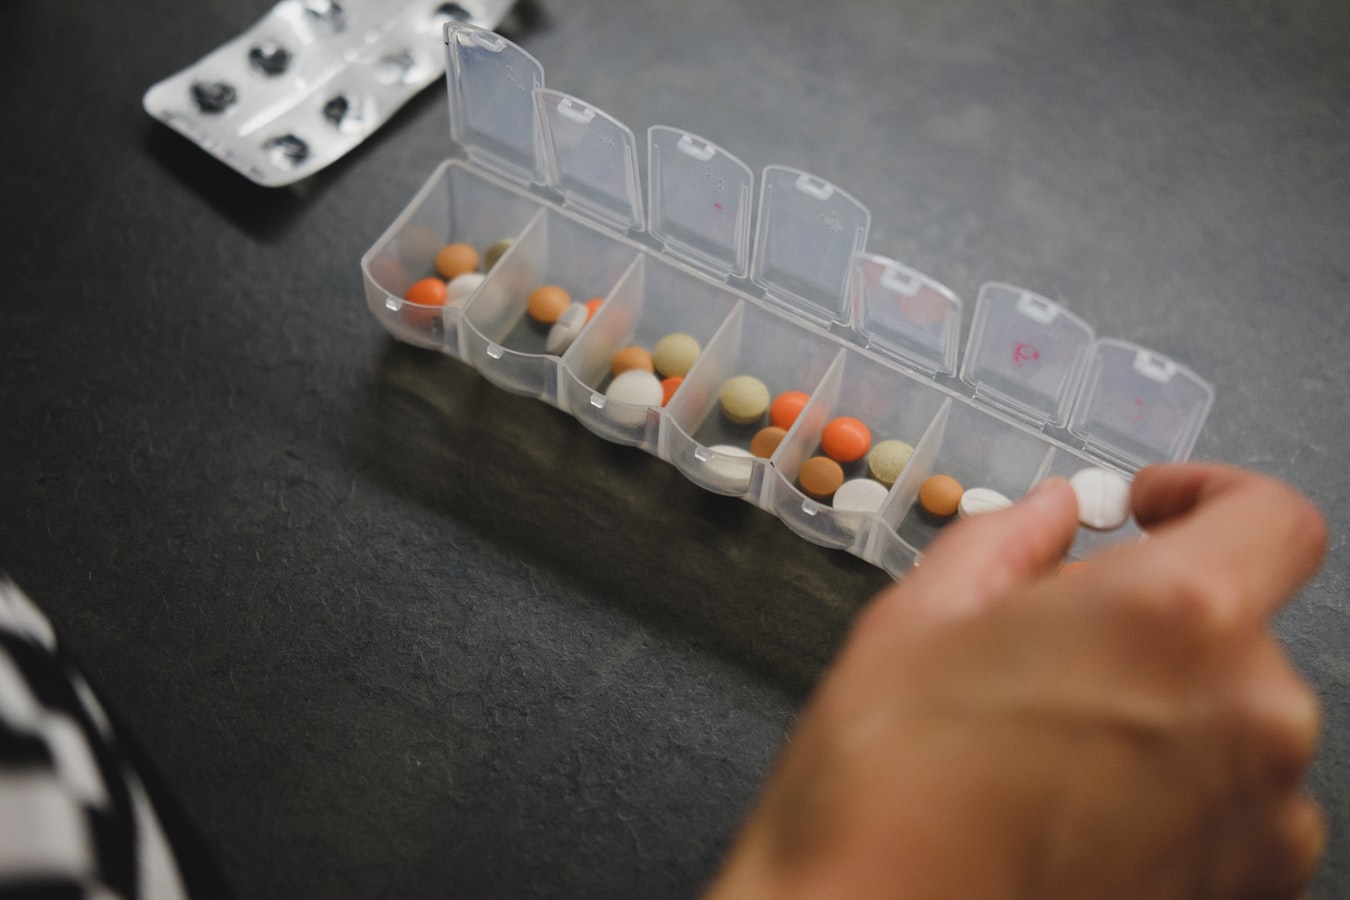 ΕΟΦ ανάκληση φαρμάκων: Αποσύρει φάρμακο που προκαλεί στειρότητα